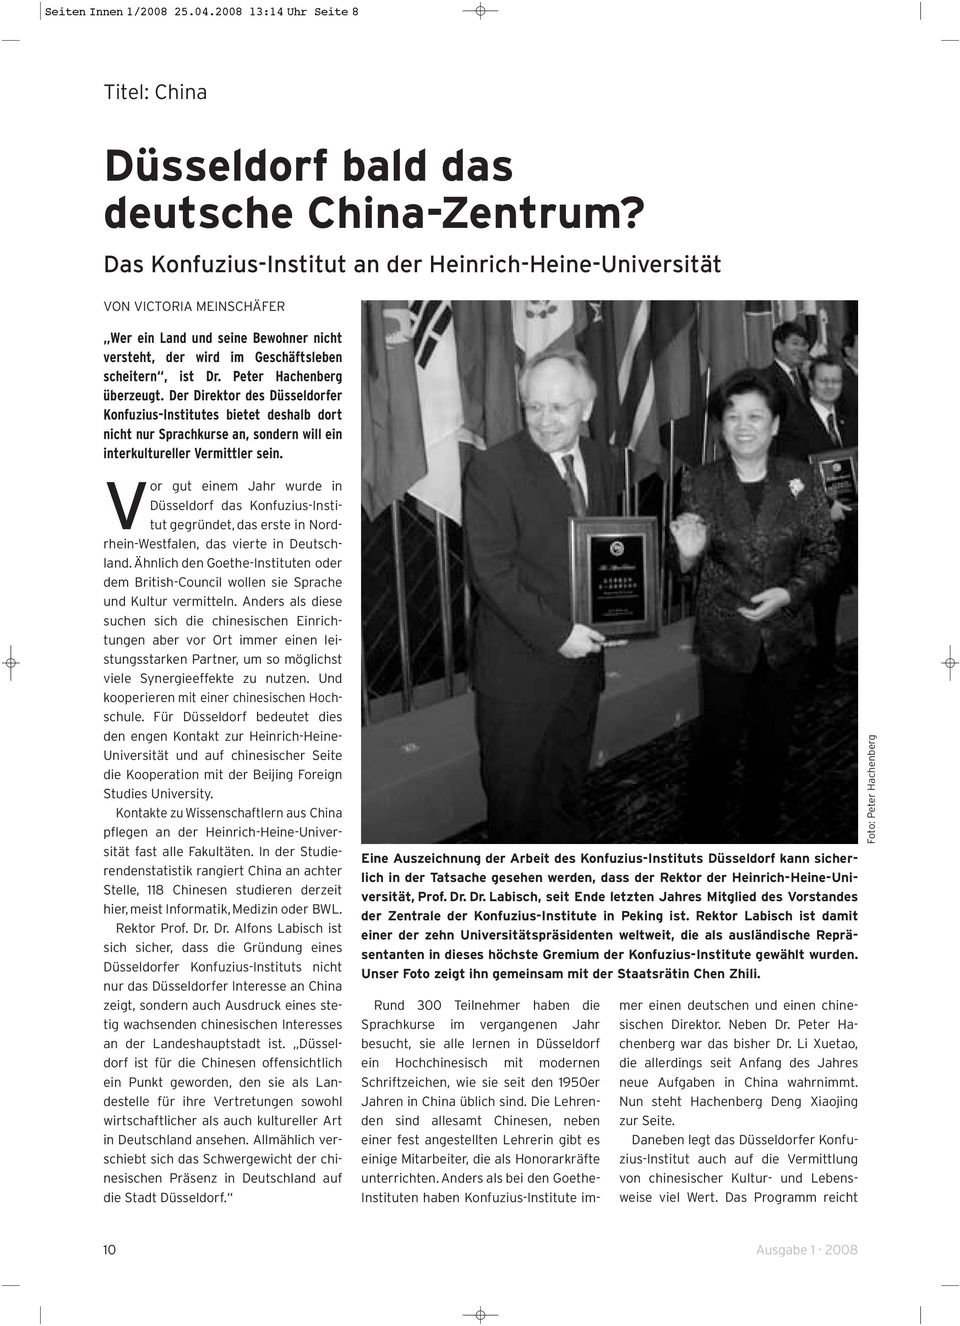 Peter Hachenberg überzeugt. Der Direktor des Düsseldorfer Konfuzius-Institutes bietet deshalb dort nicht nur Sprachkurse an, sondern will ein interkultureller Vermittler sein.